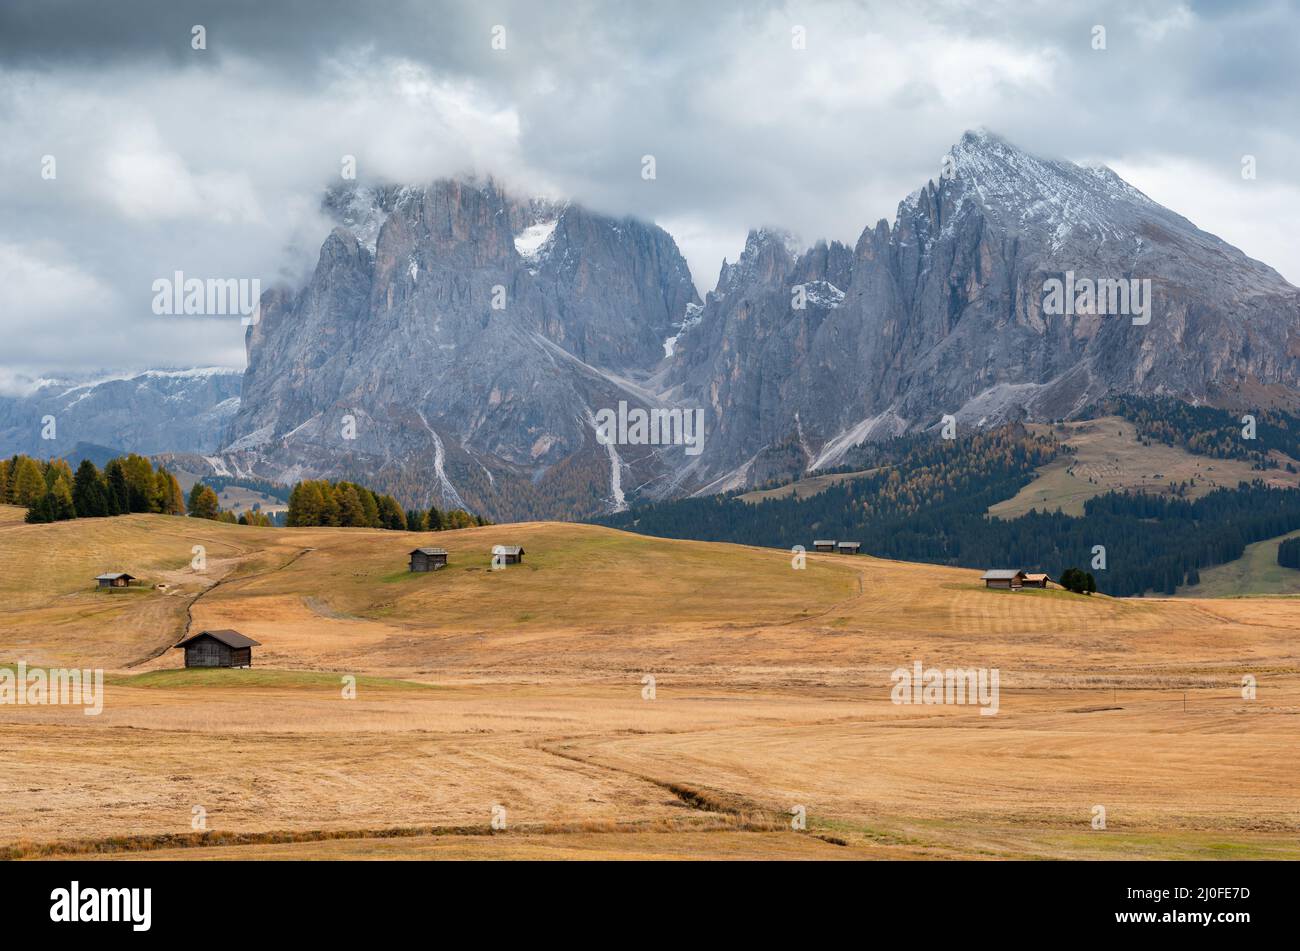 Paesaggio con cime rocciose dolomitiche nella valle dell'Alpe di siusi in Italia Foto Stock